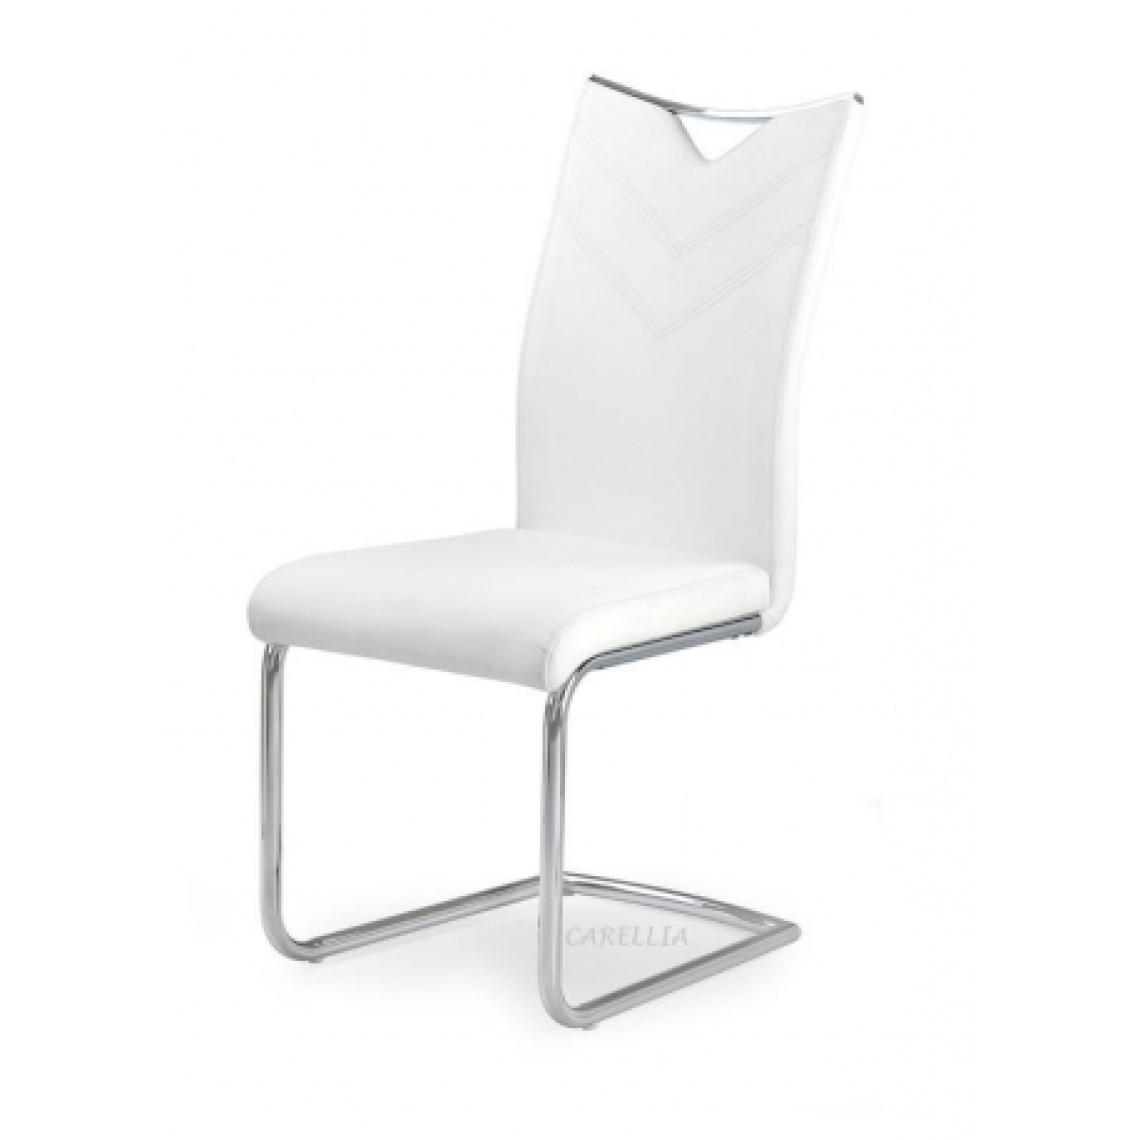 Carellia - THIBAULT lot de 4 chaises en cuir synthétique - Blanc - Chaises